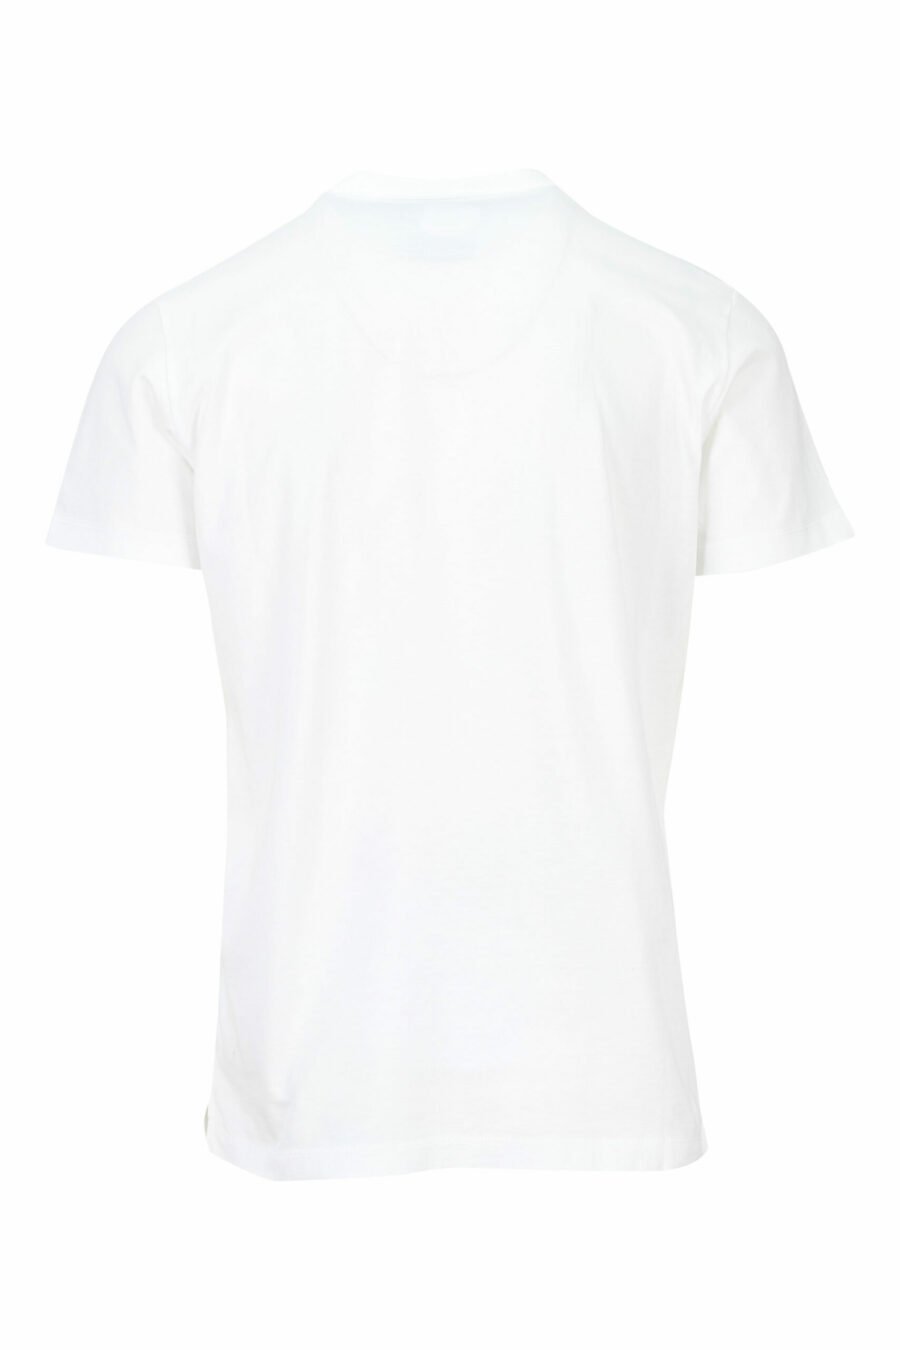 T-shirt branca com maxilogo "college" azul - 8054148086442 1 à escala